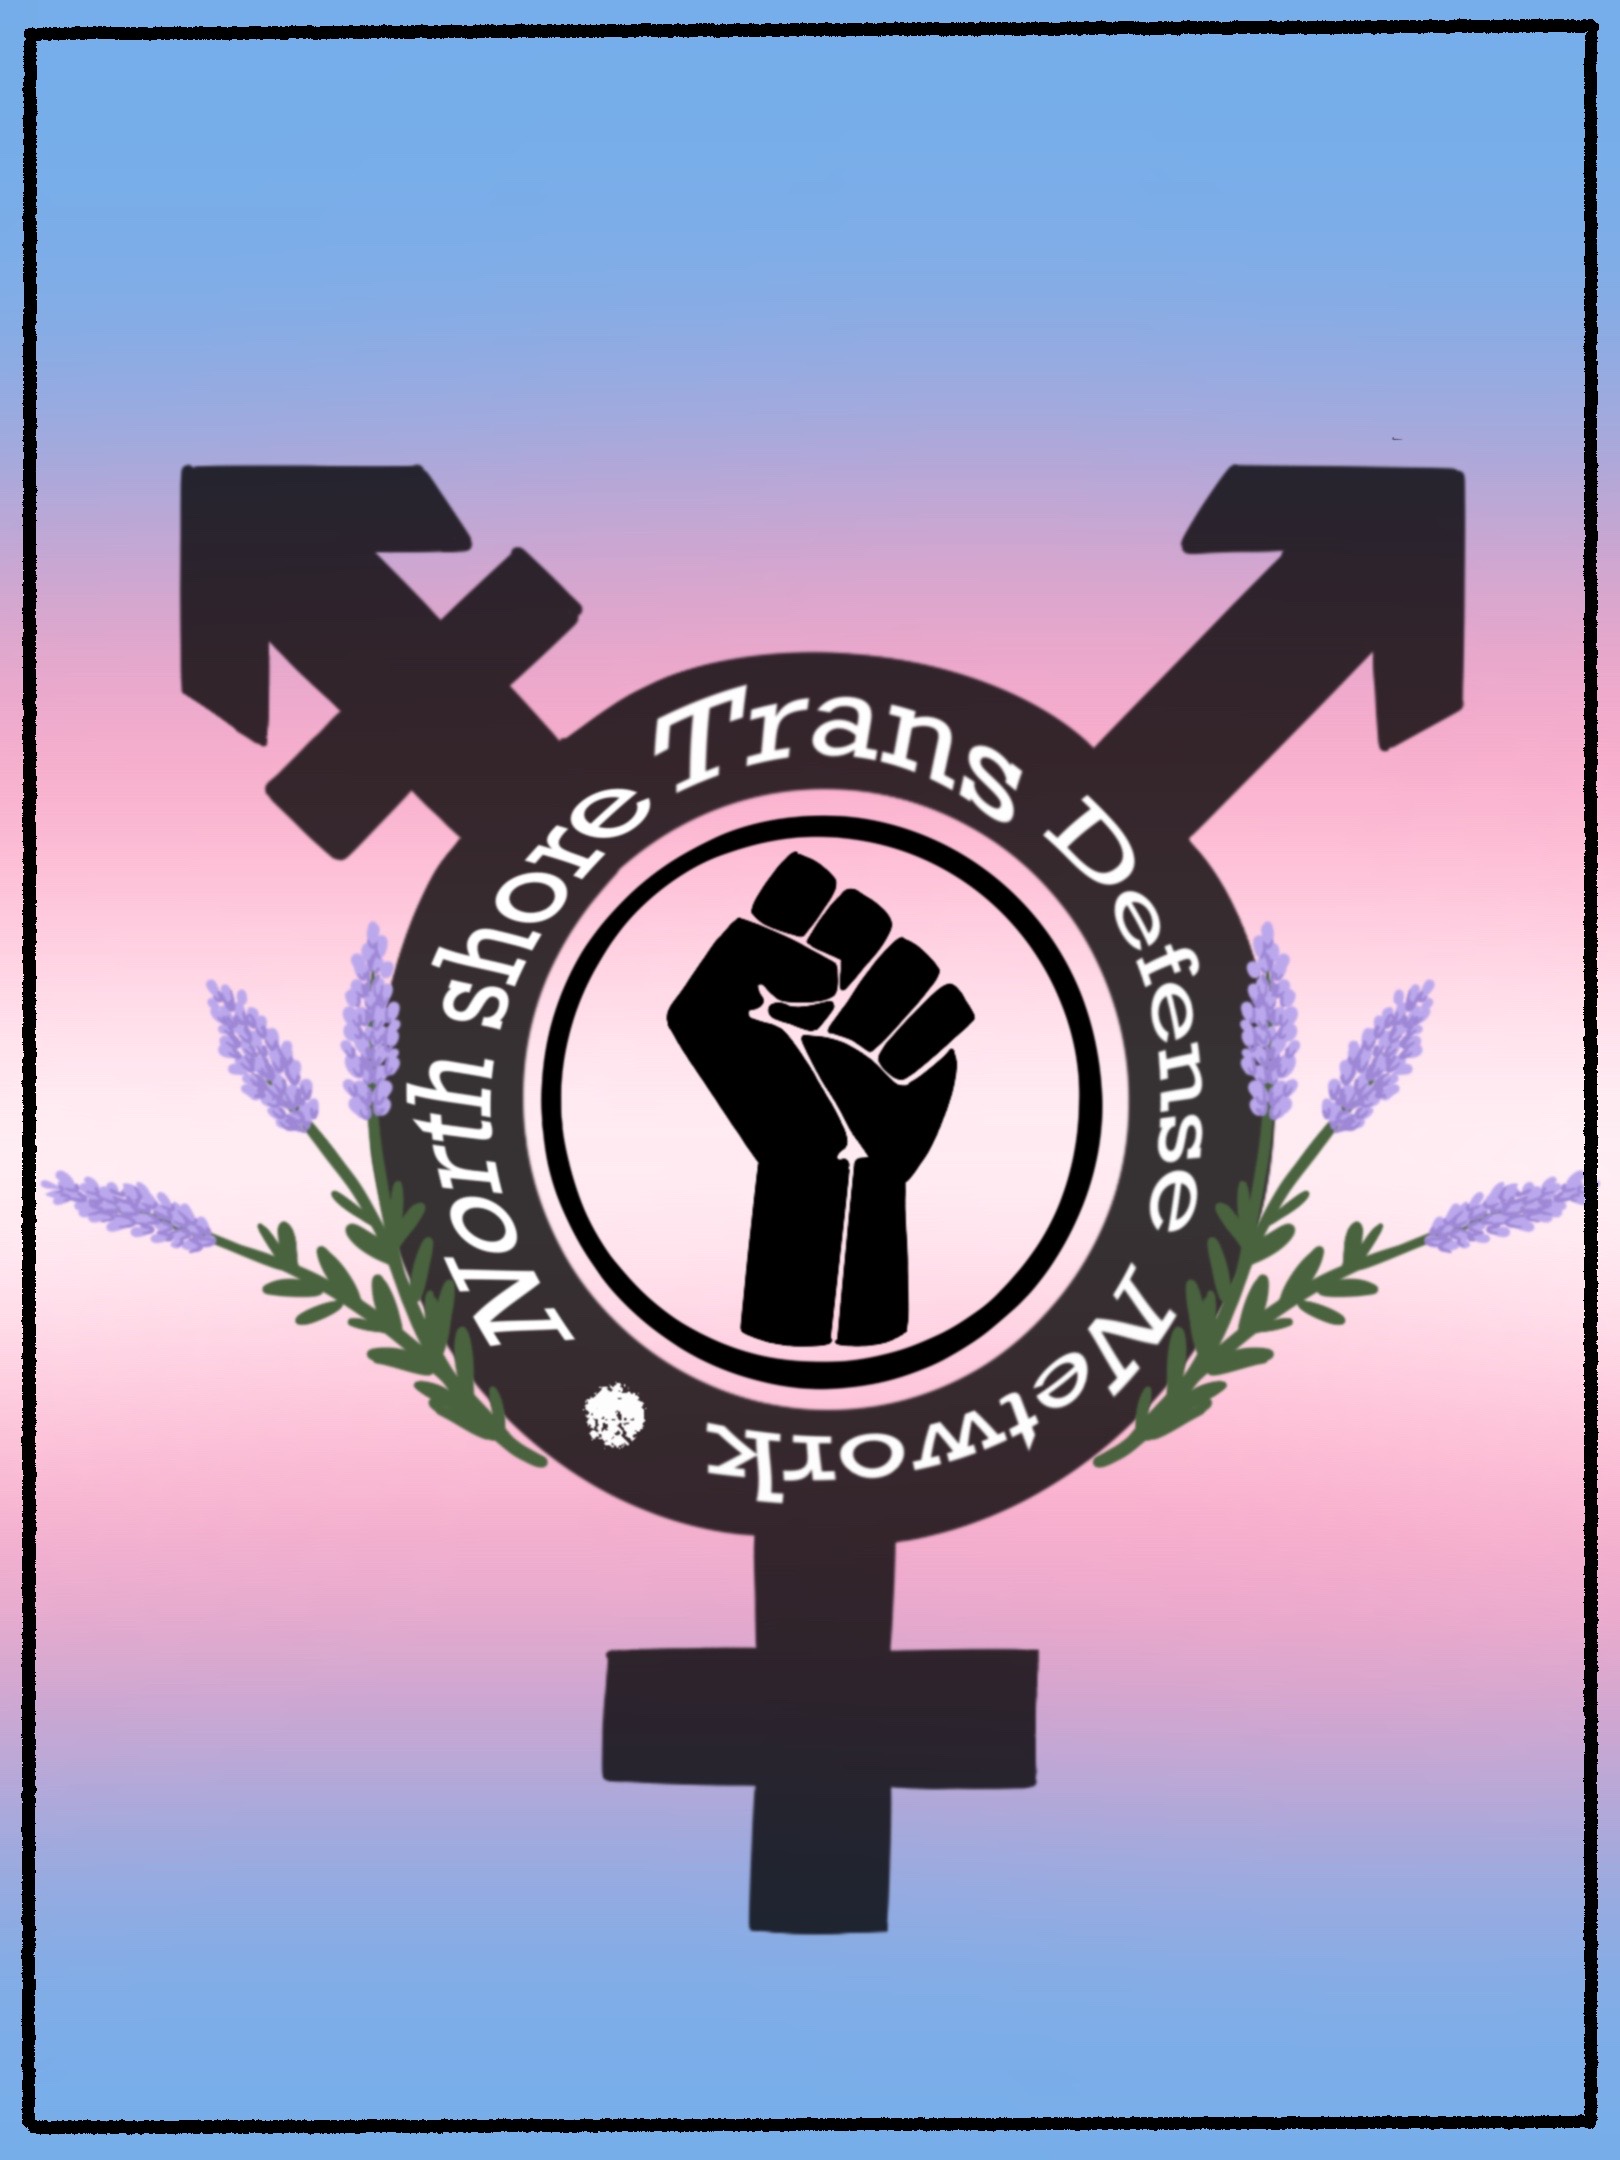 North Shore Trans Defense Network (n.s.t.d.n) logo